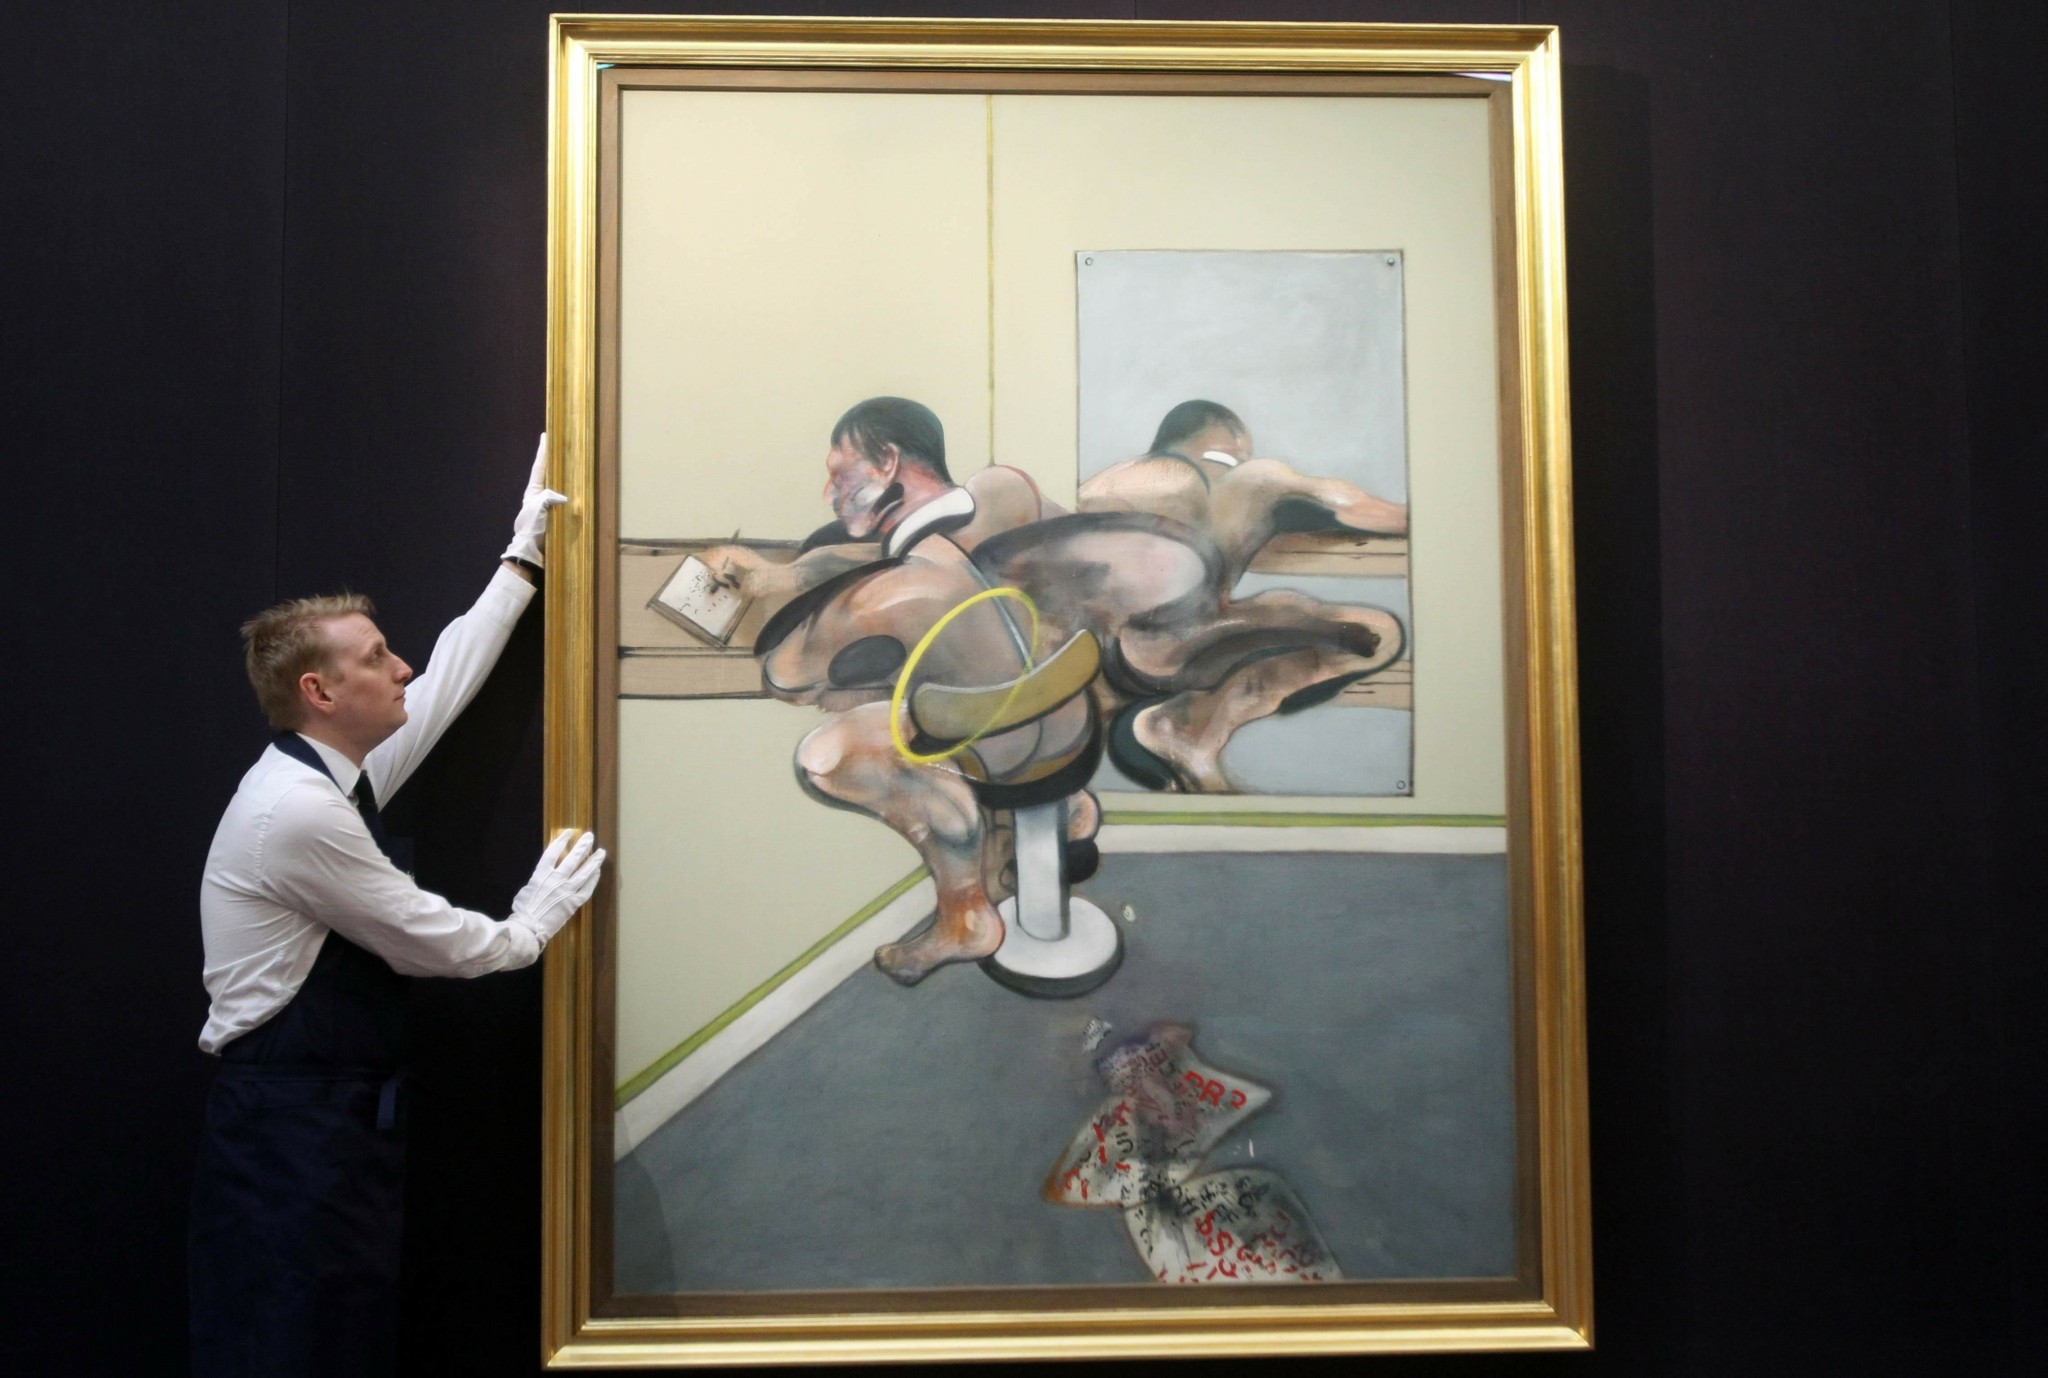 Οι μεγάλοι της σύγχρονης Τέχνης: Γιατί είναι σπουδαίος ο Φράνσις Μπέικον